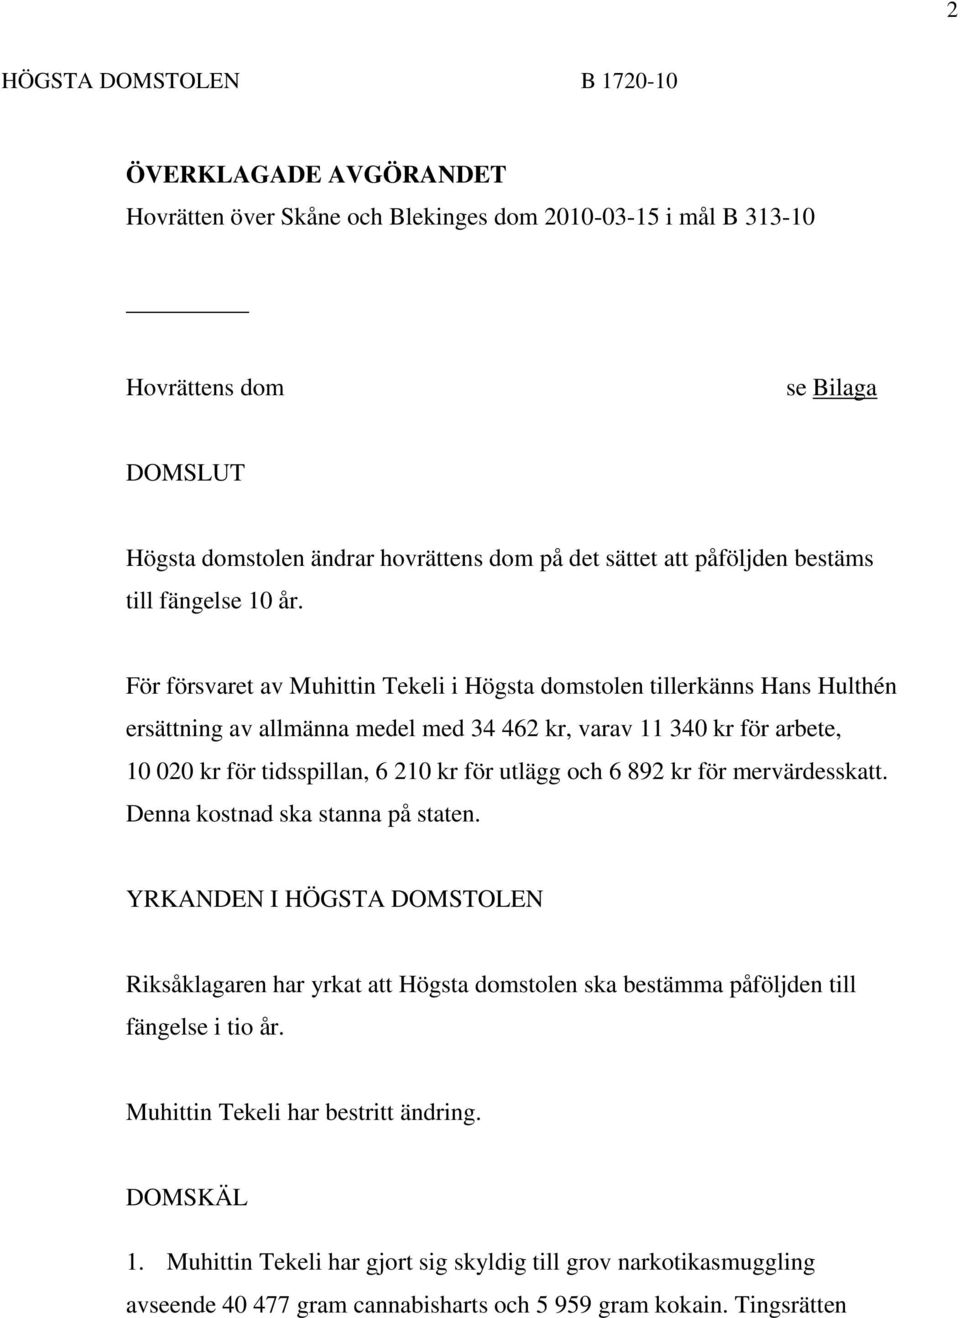 För försvaret av Muhittin Tekeli i Högsta domstolen tillerkänns Hans Hulthén ersättning av allmänna medel med 34 462 kr, varav 11 340 kr för arbete, 10 020 kr för tidsspillan, 6 210 kr för utlägg